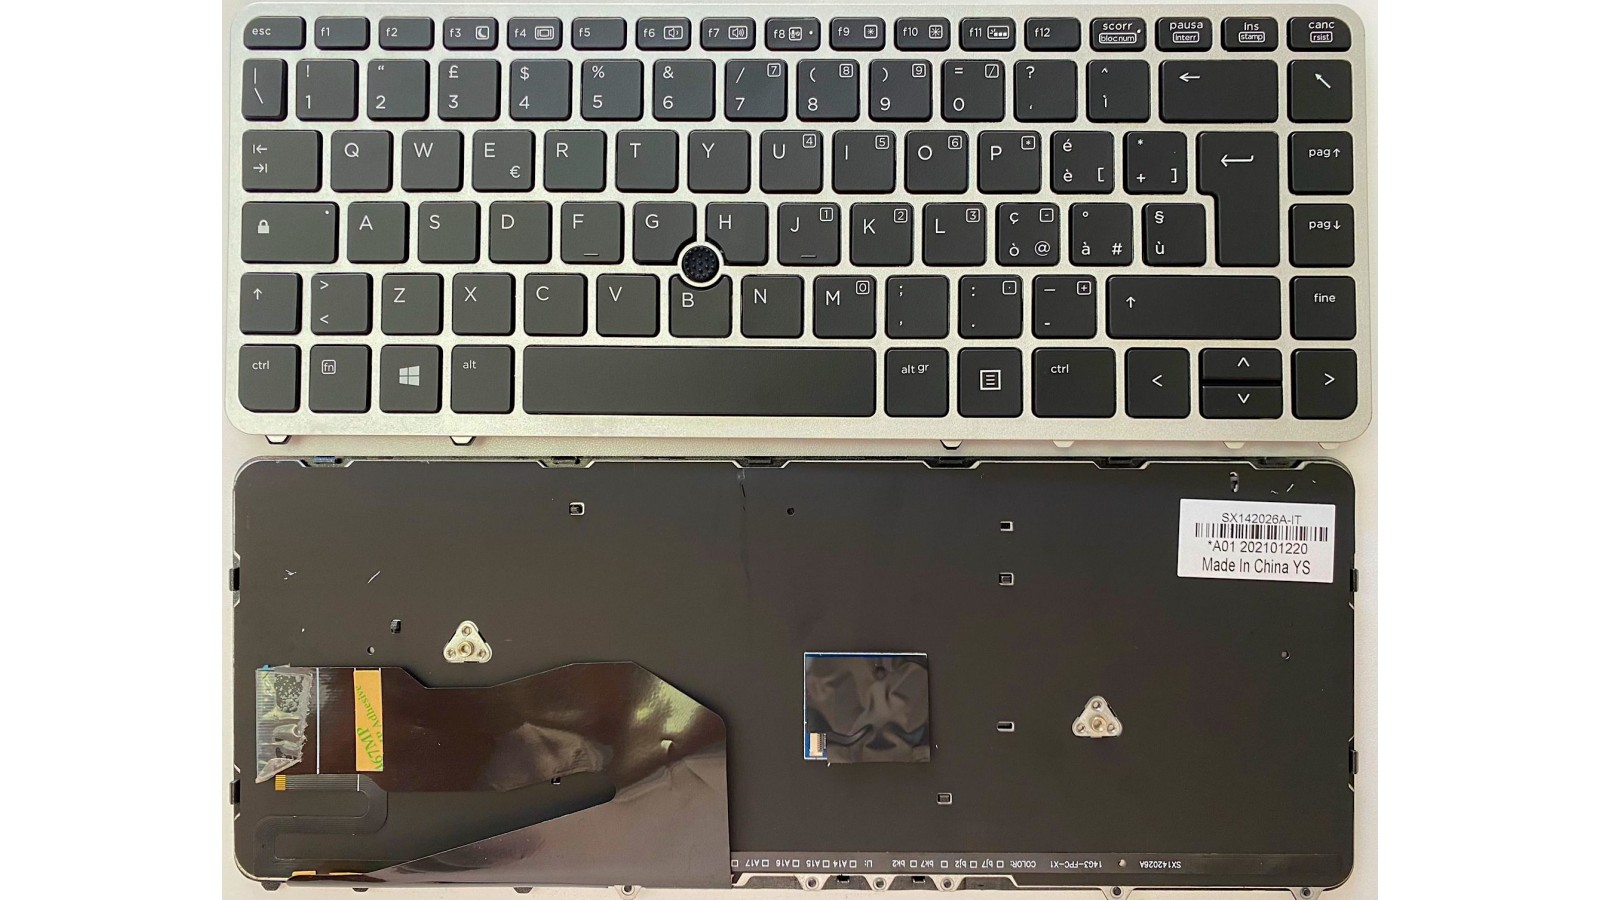 Tastiera Italiana compatibile con Hp EliteBook 840 G2 850 G2 Retroiiluminata con Trackpad